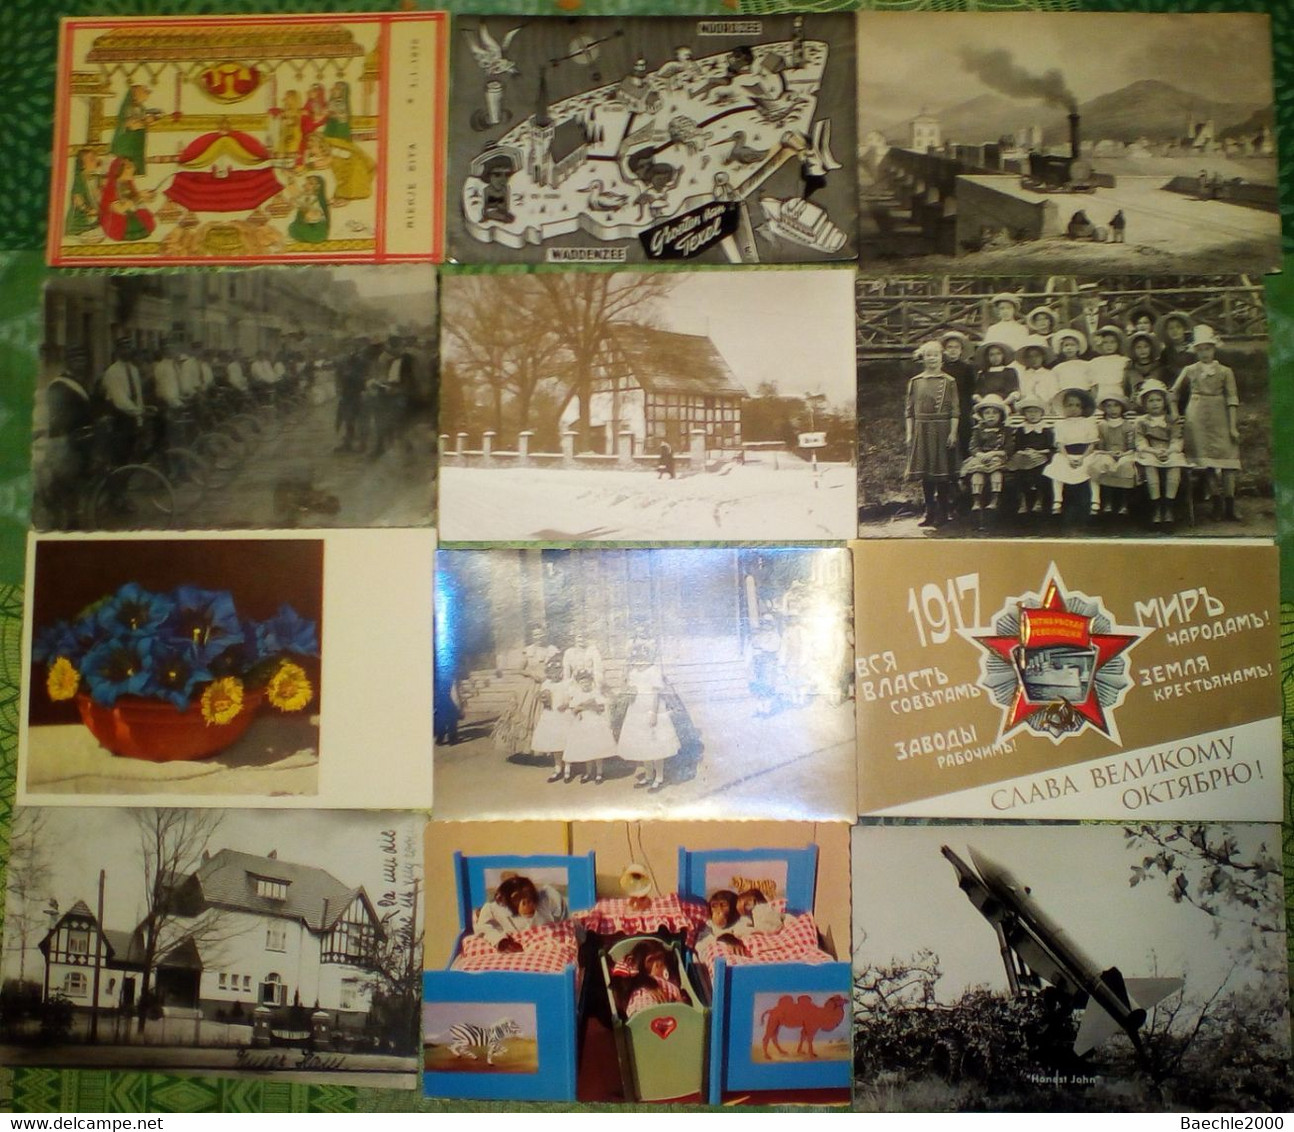 680 AK Kitsch,Humor, Kunst,Familienbilder, Christl.Bilder, Eisenbahn,Postschilder, etc.davon 320 AK 9x14 cm,